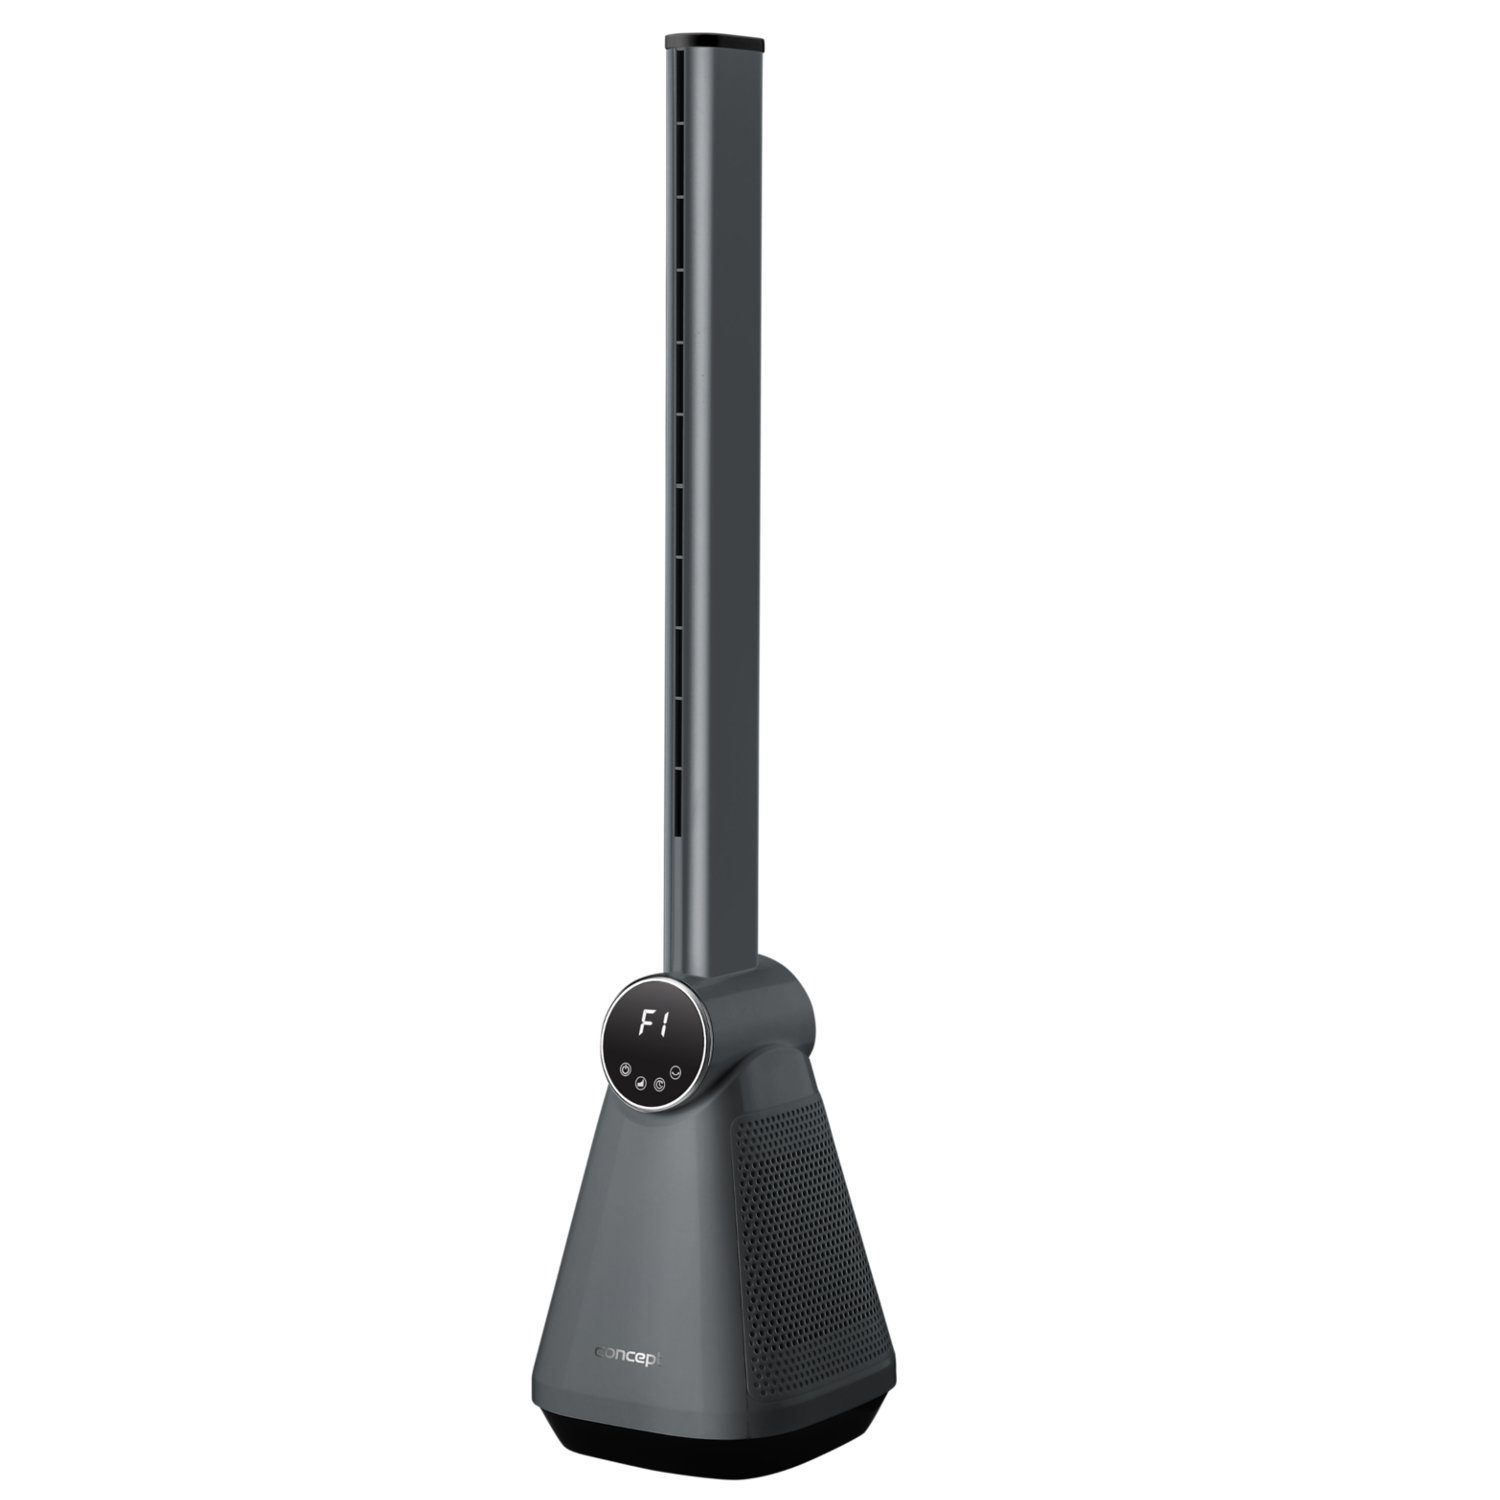 Turmventilator V, VS5130, Concept W, 50 50 24x24x101cm Hz, 220-240